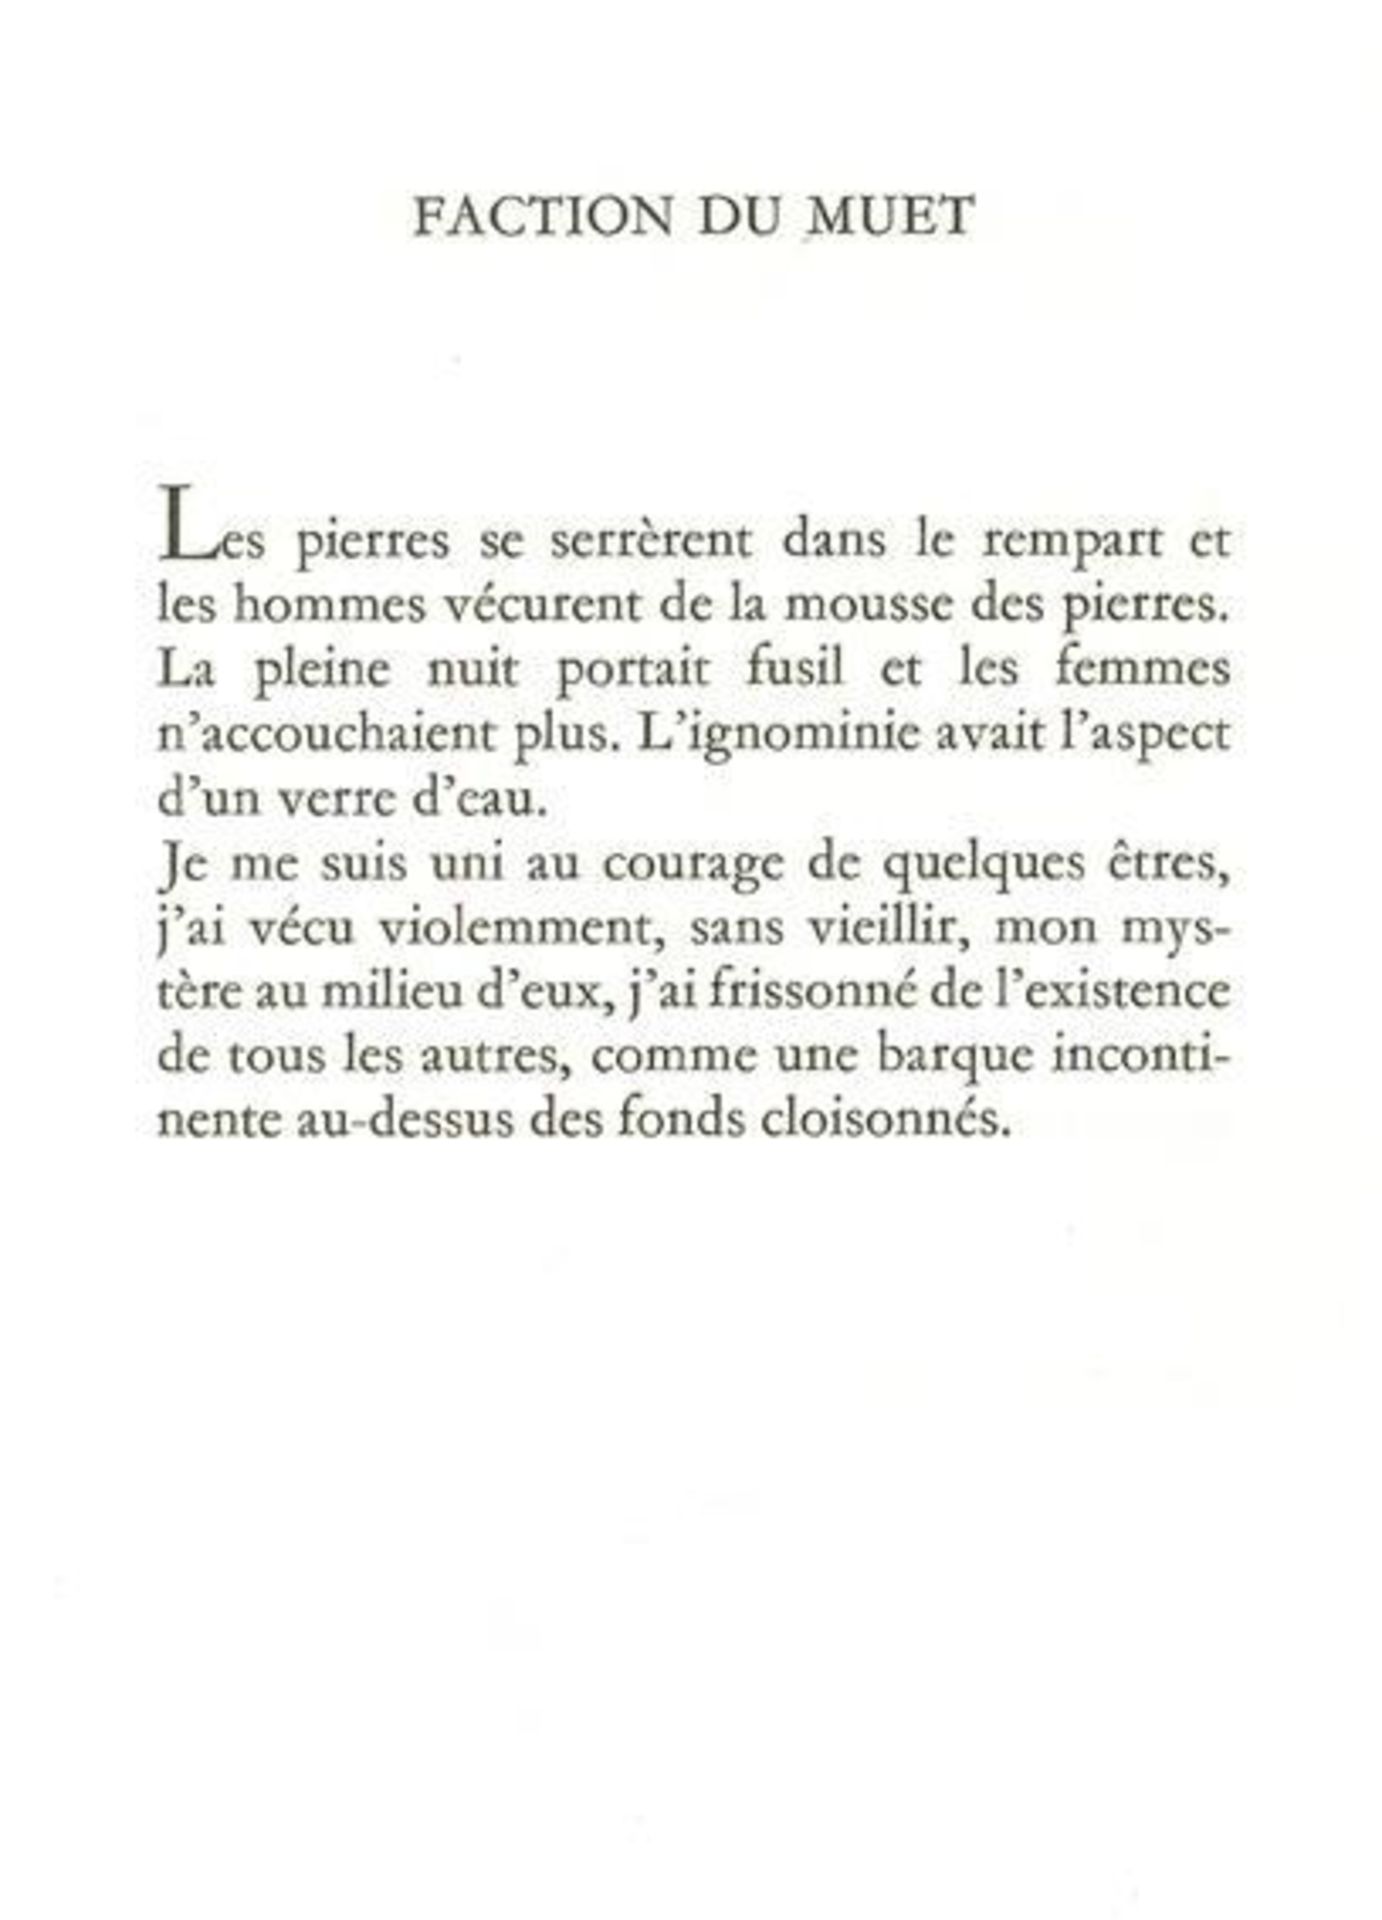 Char,R.Retour amont. Illustré par Giacometti. Paris, GLM 1966. 4°. Mit 4 Orig.-Radierungen von